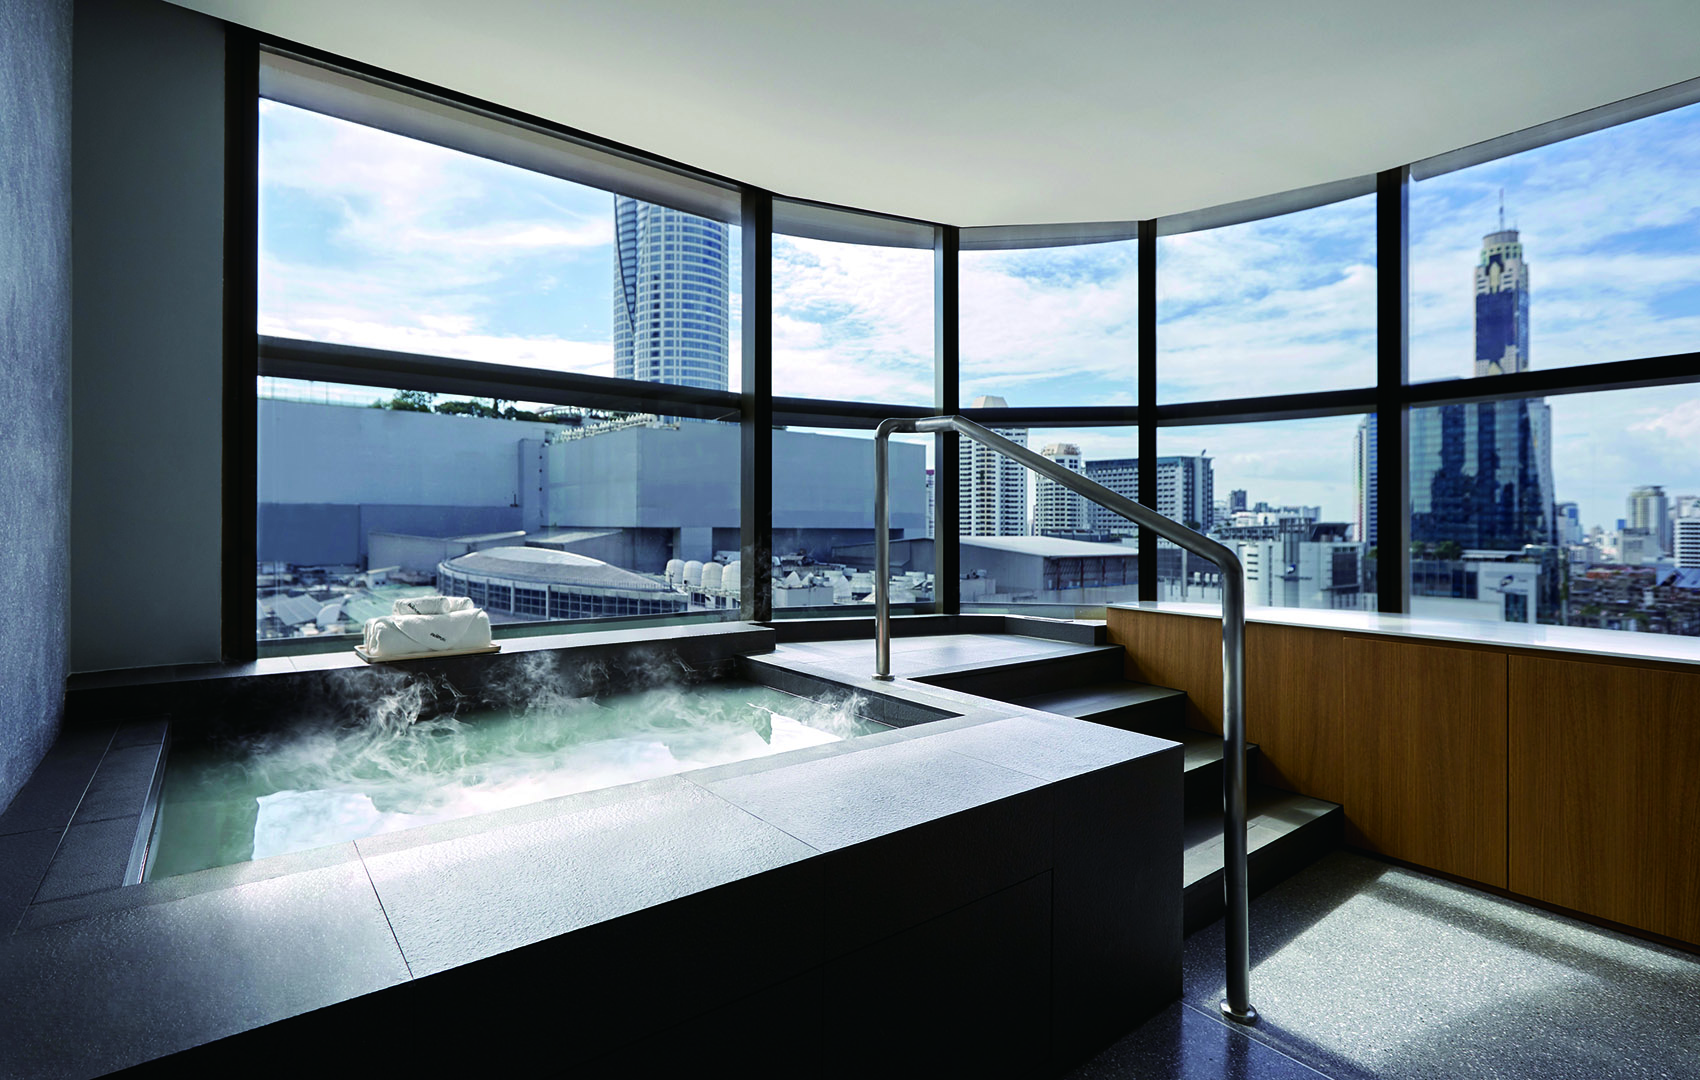 曼谷PANPURI温泉浴场-公共空间类装修案例-筑龙室内设计论坛